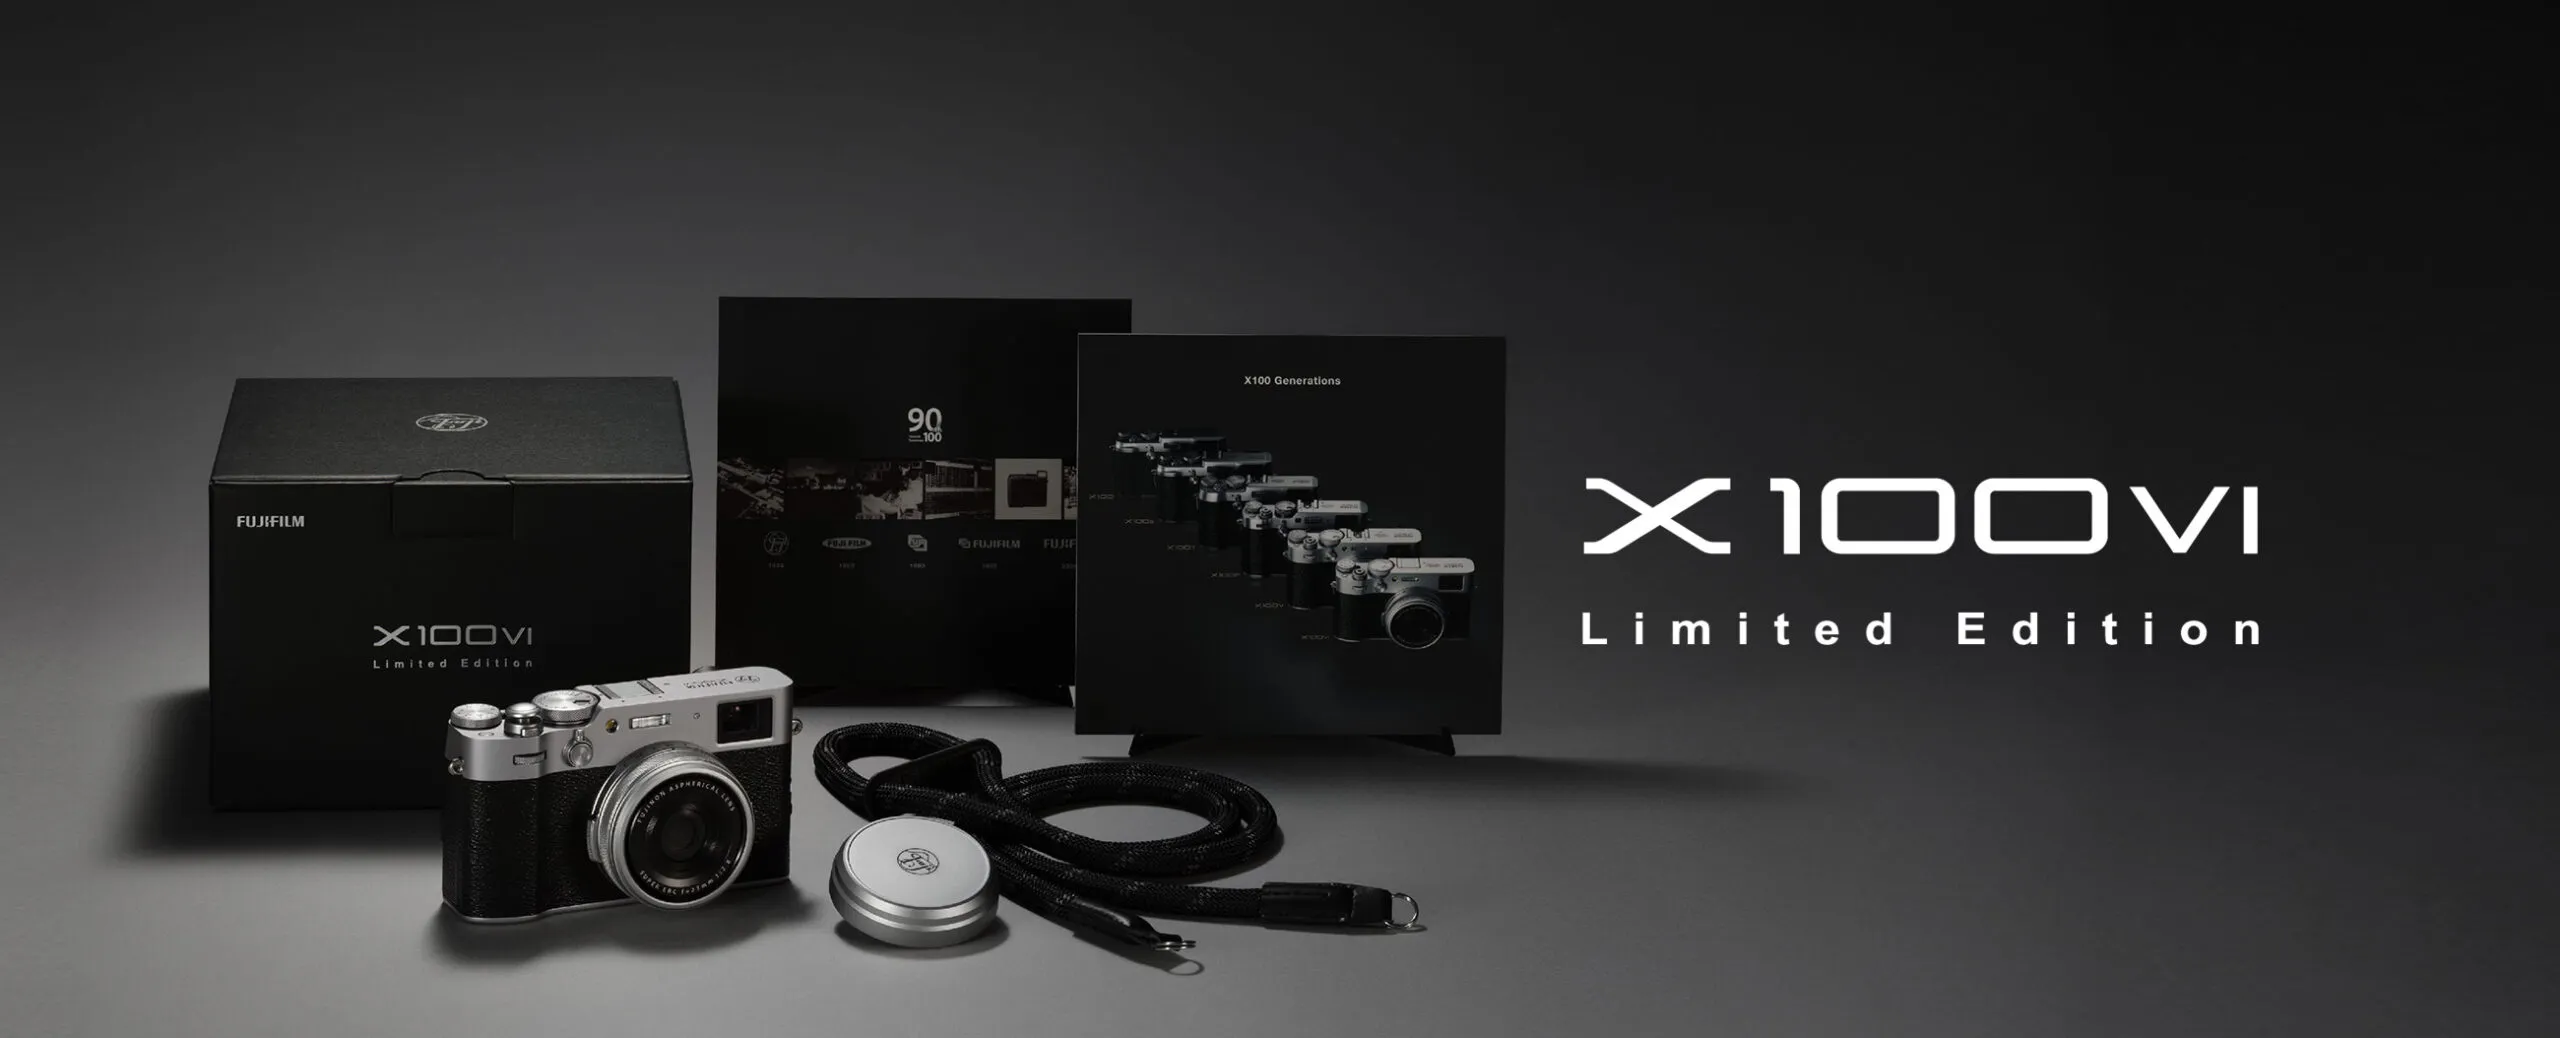 Có gì bên trong phiên bản Fujifilm X100VI đặc biệt kỷ niệm 90 năm thành lập?